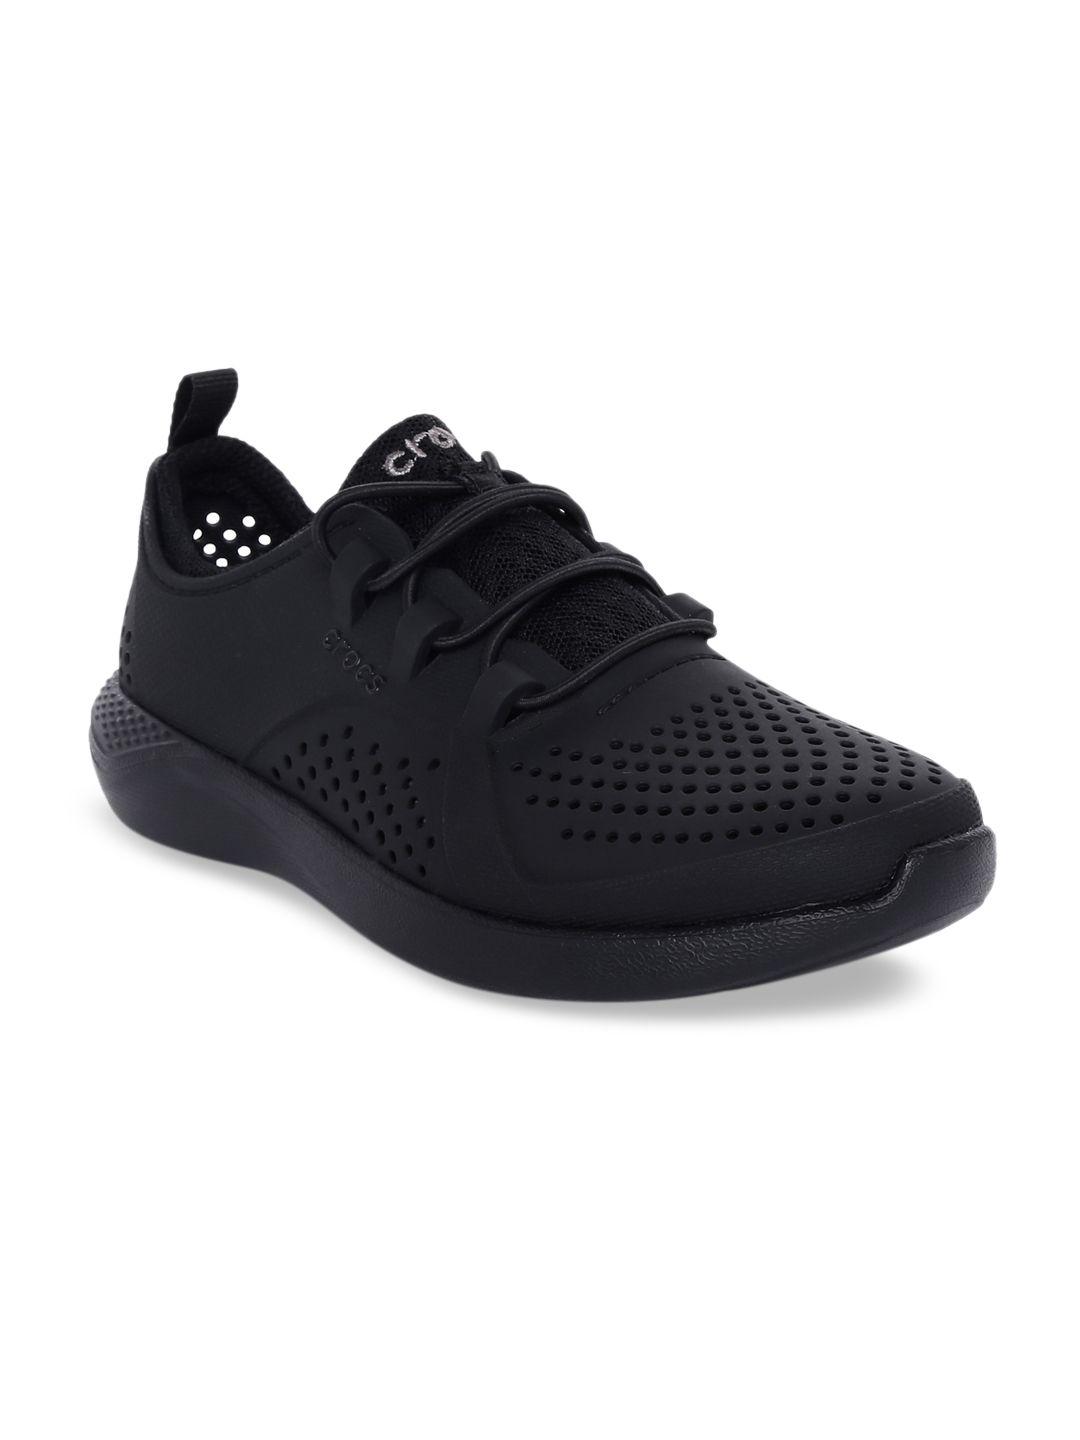 crocs-unisex-black-literide-pacer-slip-on-sneakers